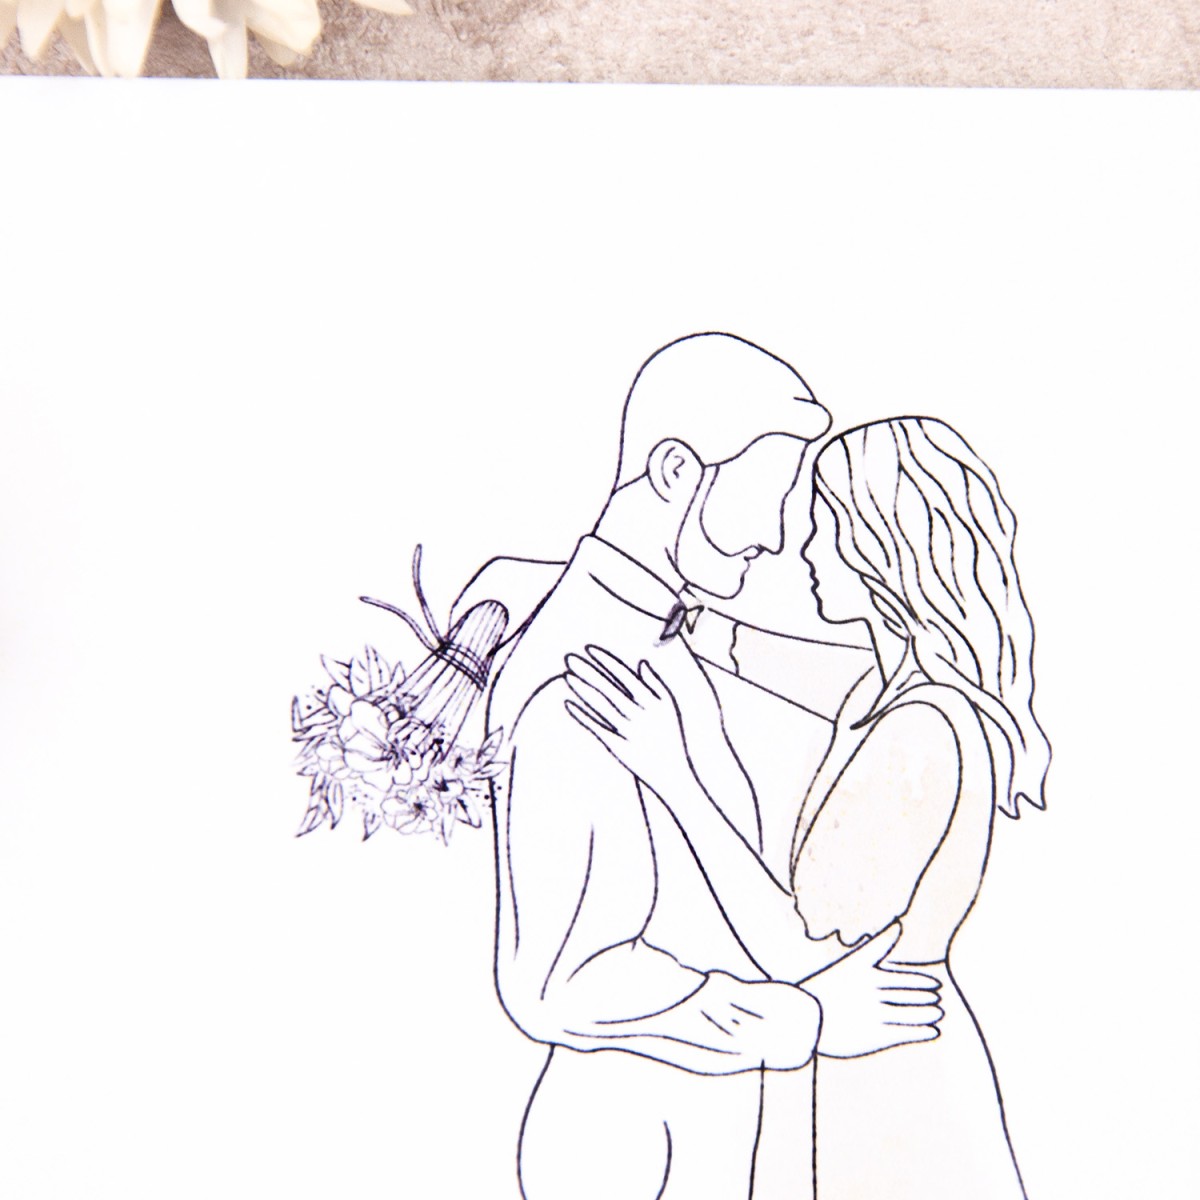 Minimalistyczne zaproszenia ślubne ze szkicowaną Parą Młodą - Hug Me - PRÓBKA